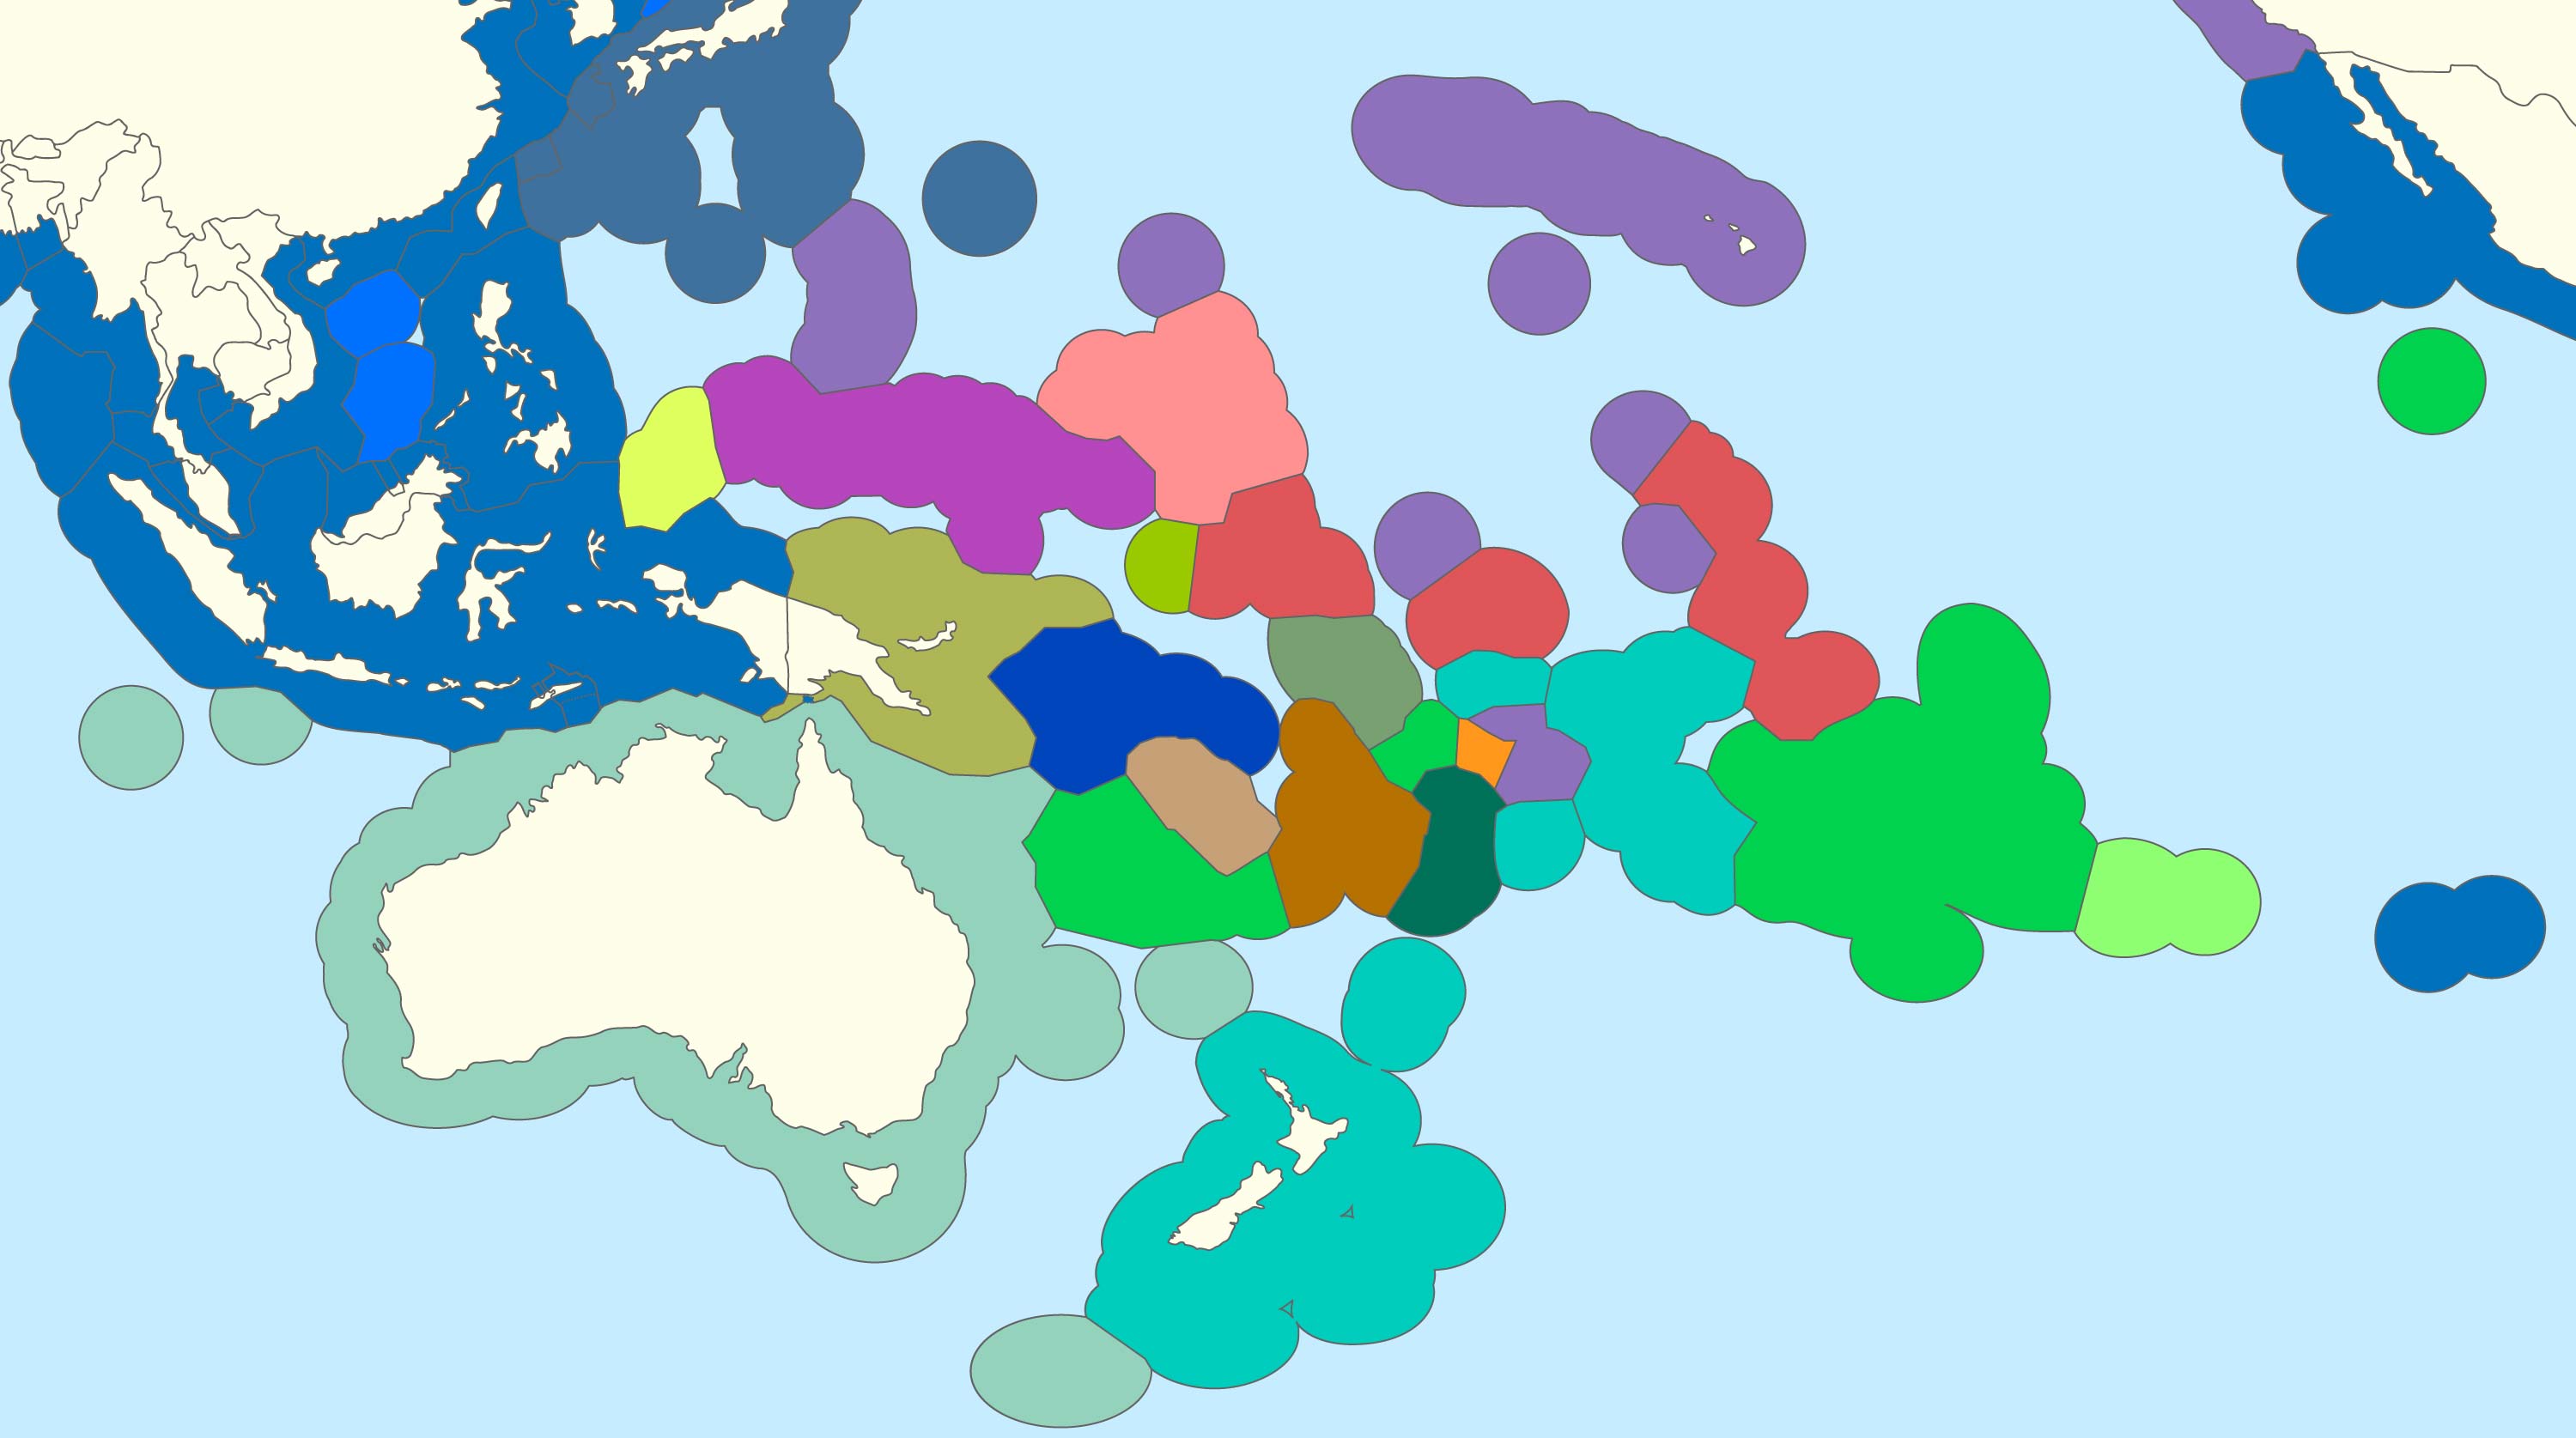 Oceania Exclusive Economic Zones Map